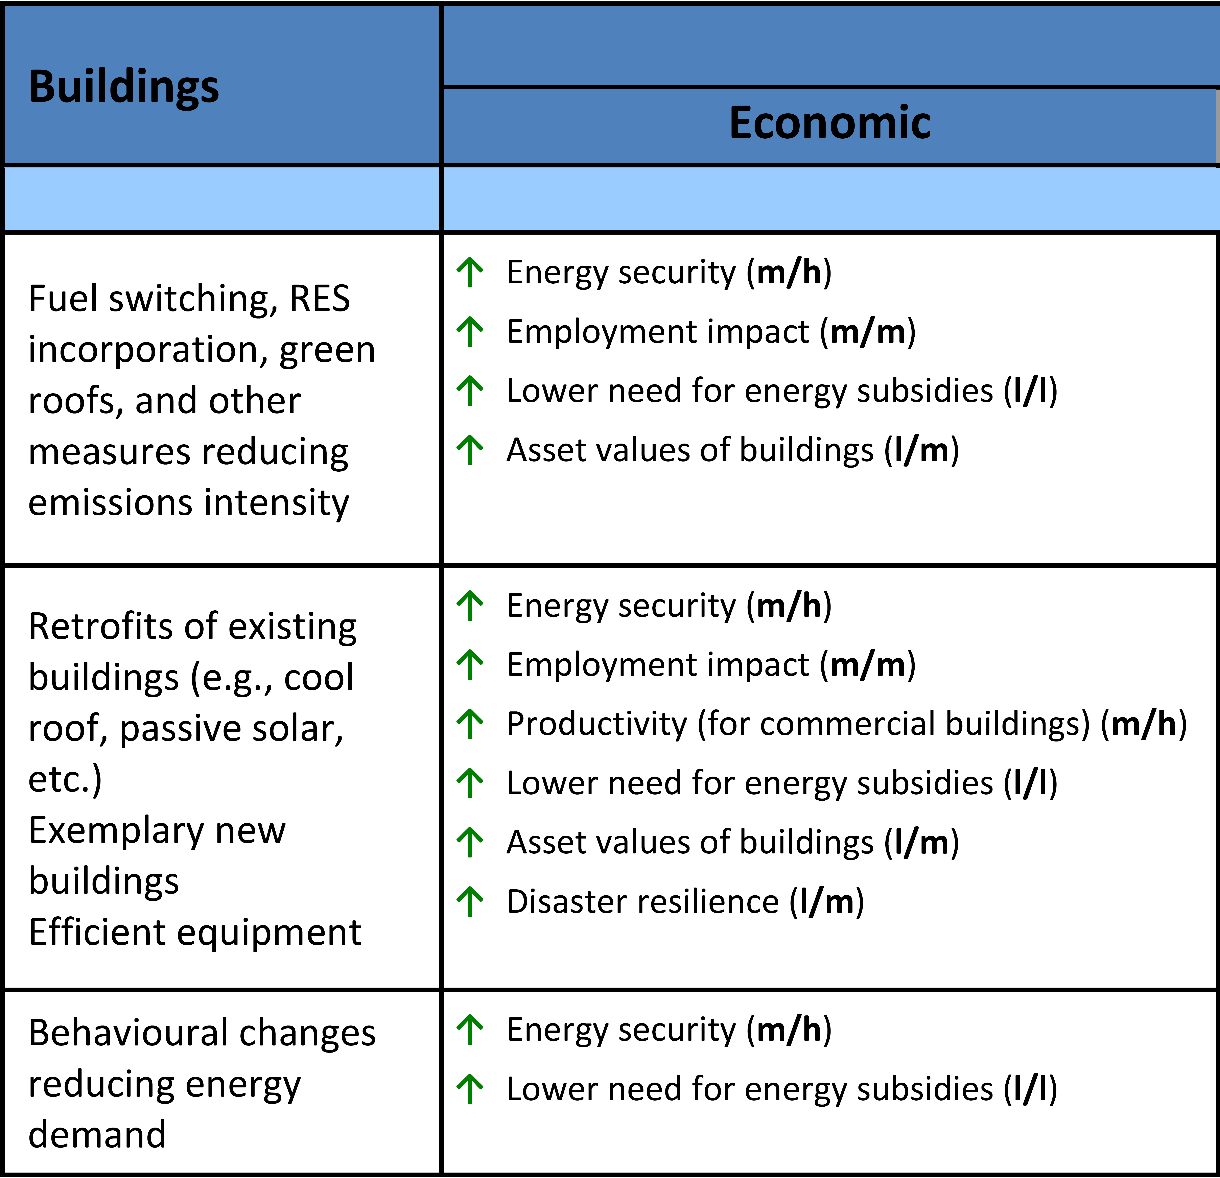 Όπως αναφέρεται στον πίνακα από την 4 η έκθεση του IPCC, τα βέλη μας δείχνουν τα θετικά αποτελέσματα από επεμβάσεις μείωσης της κατανάλωσης ενέργειας ενεργειακής αναβάθμισης σε κτίρια.